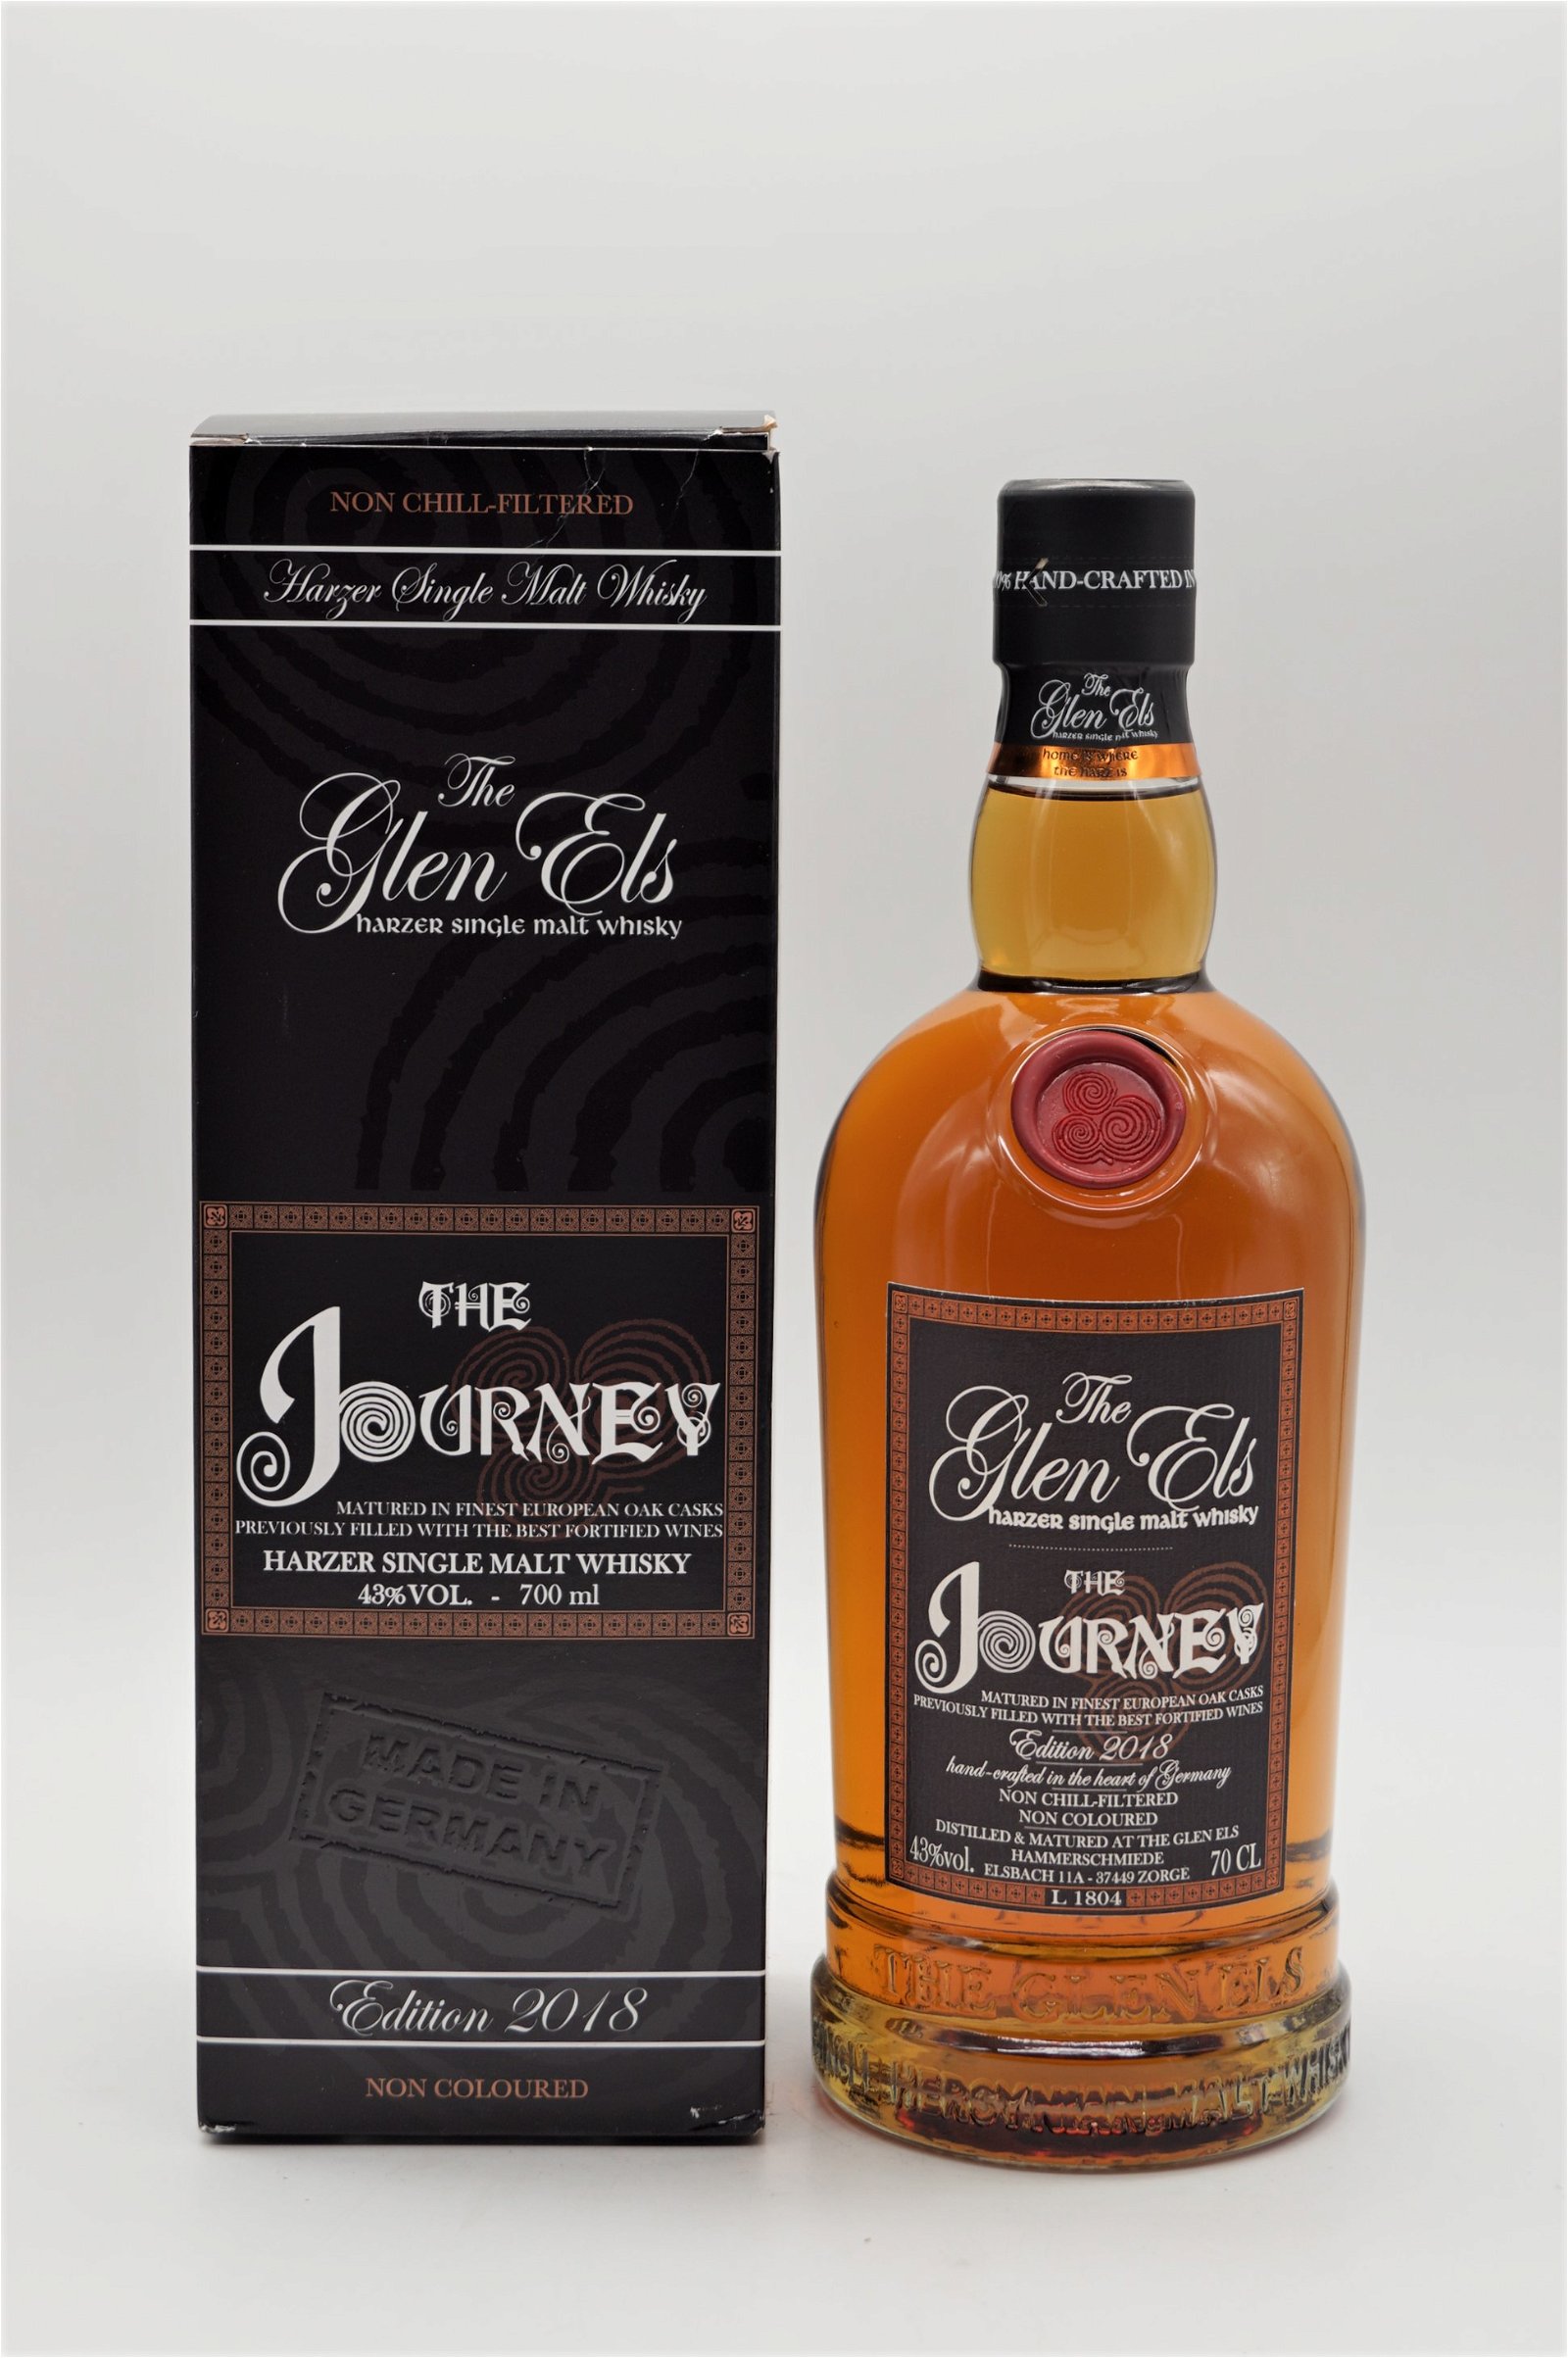 The Glen Els The Journey Harzer Single Malt Whisky